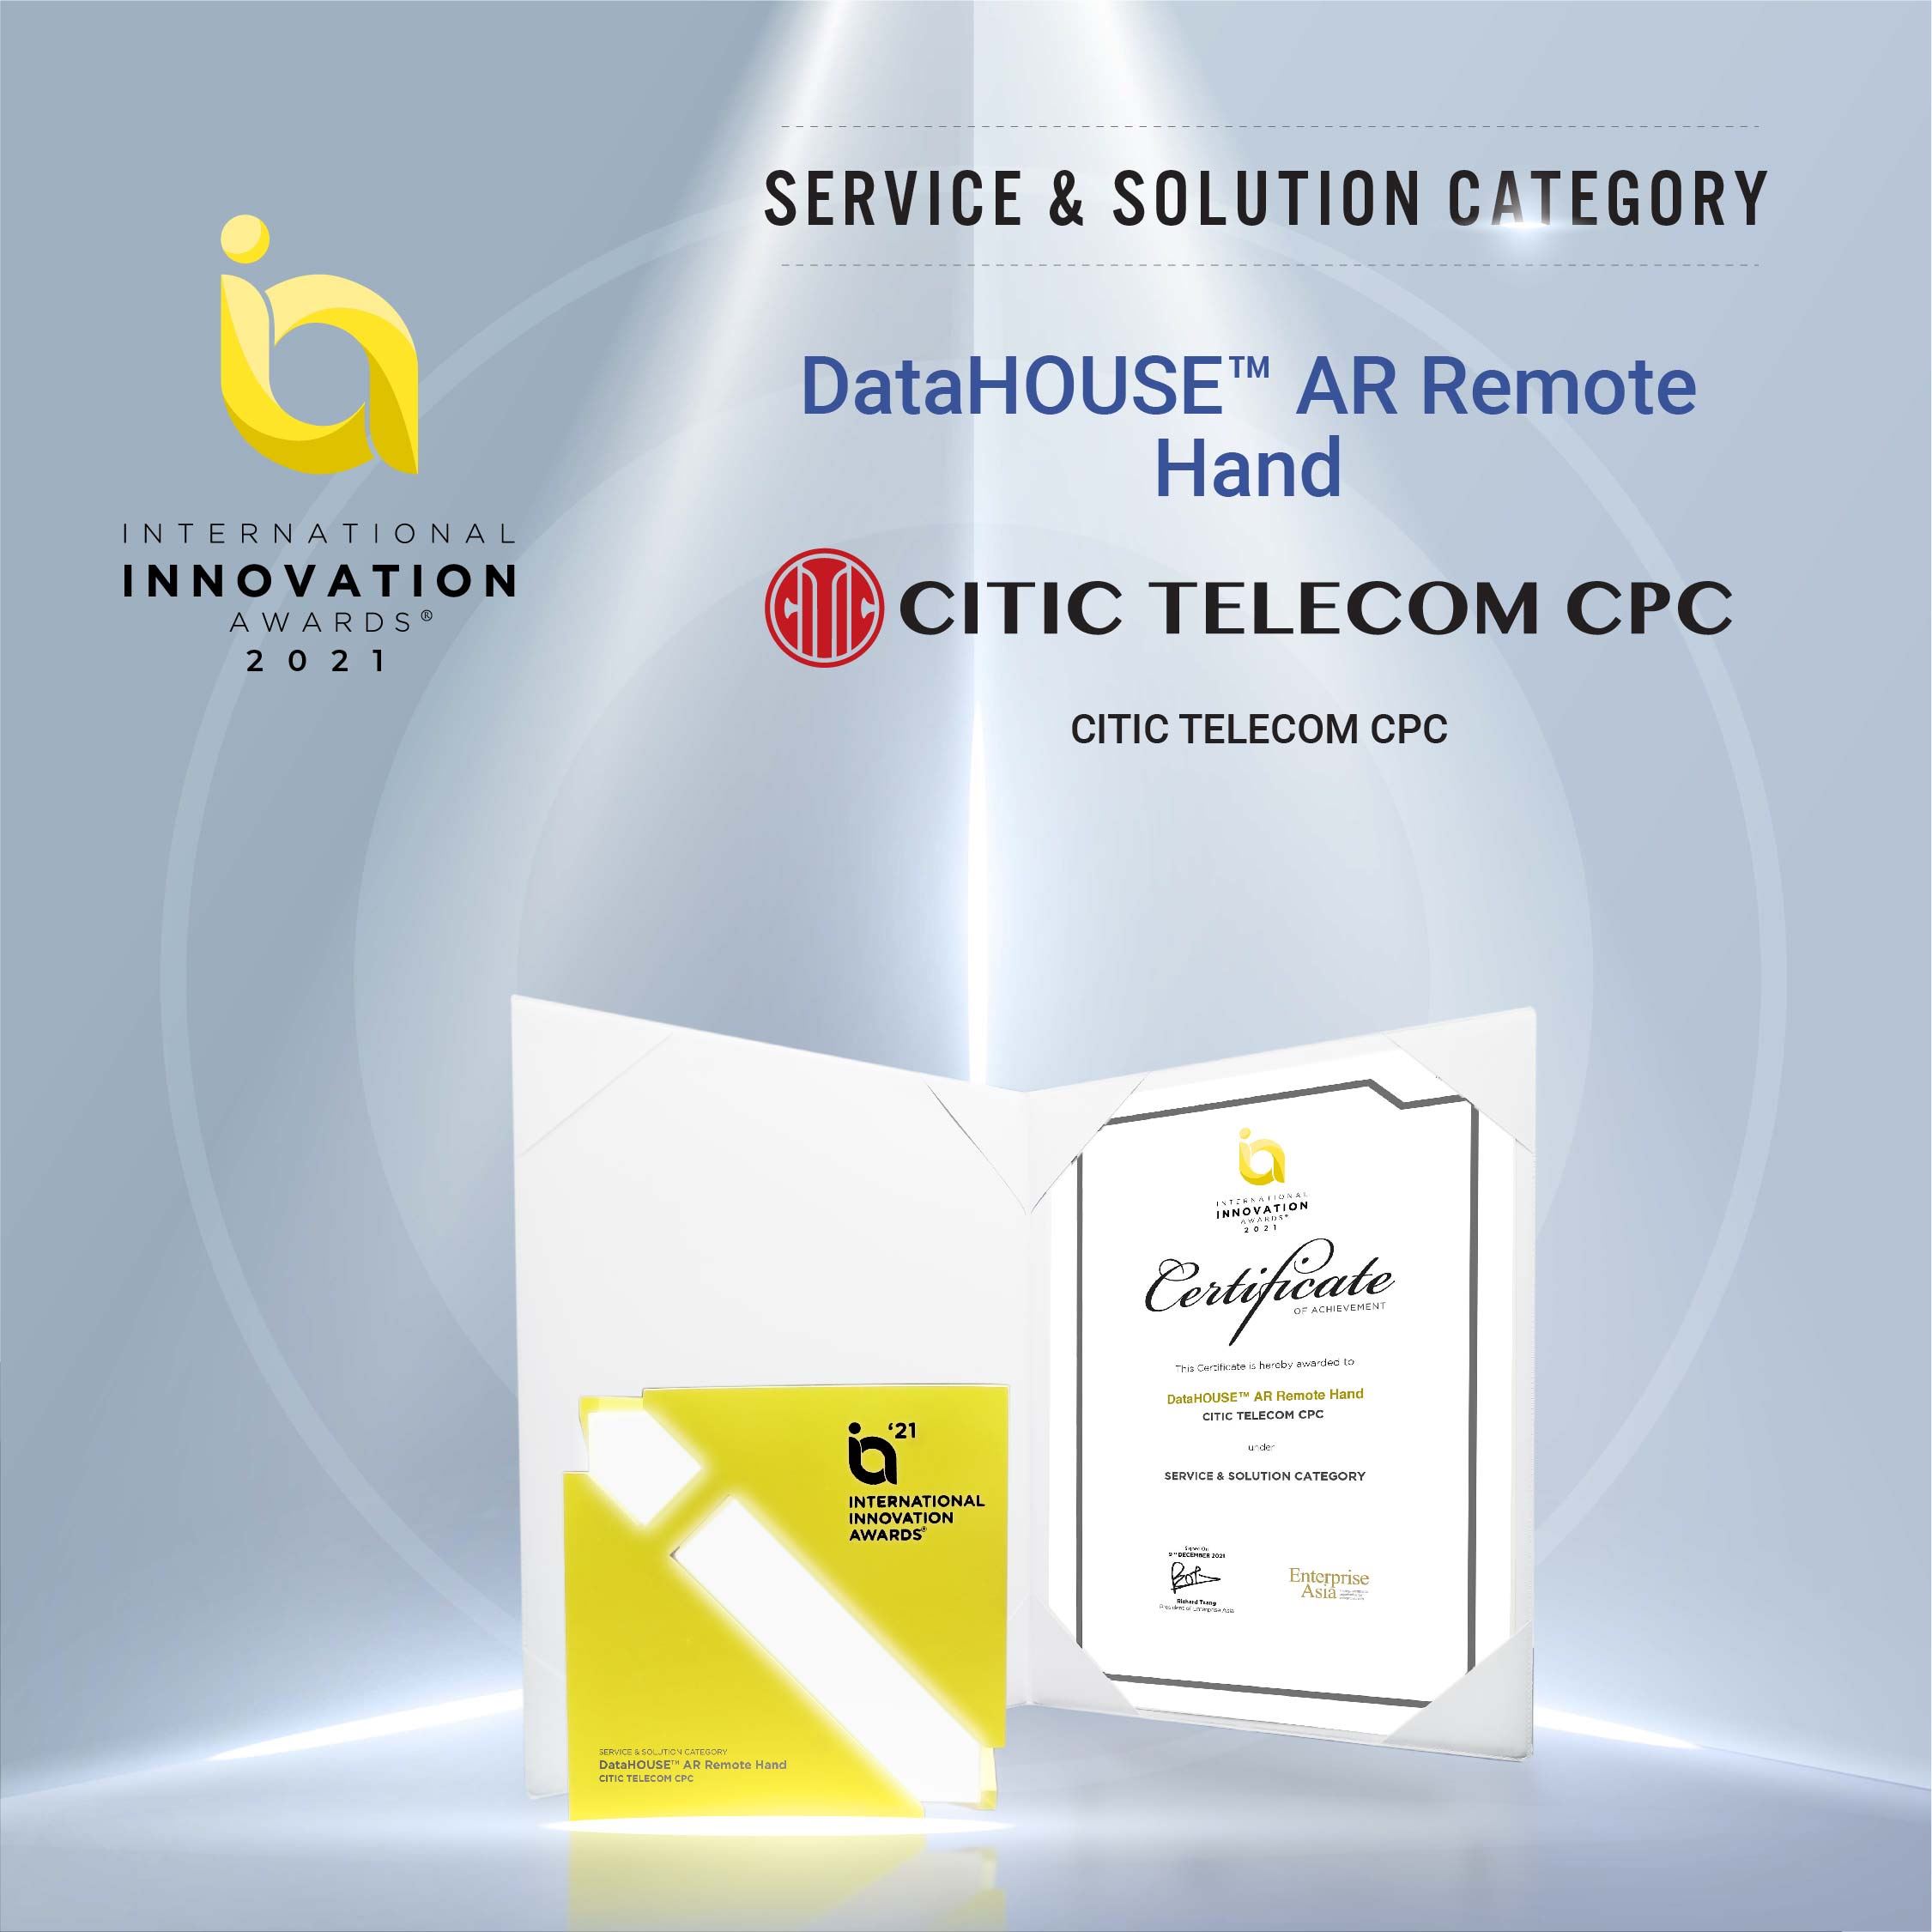 中信國際電訊CPC憑藉智能創新勇奪三項業界大獎
透過ICT-MiiND策略 賦能企業創新發展
